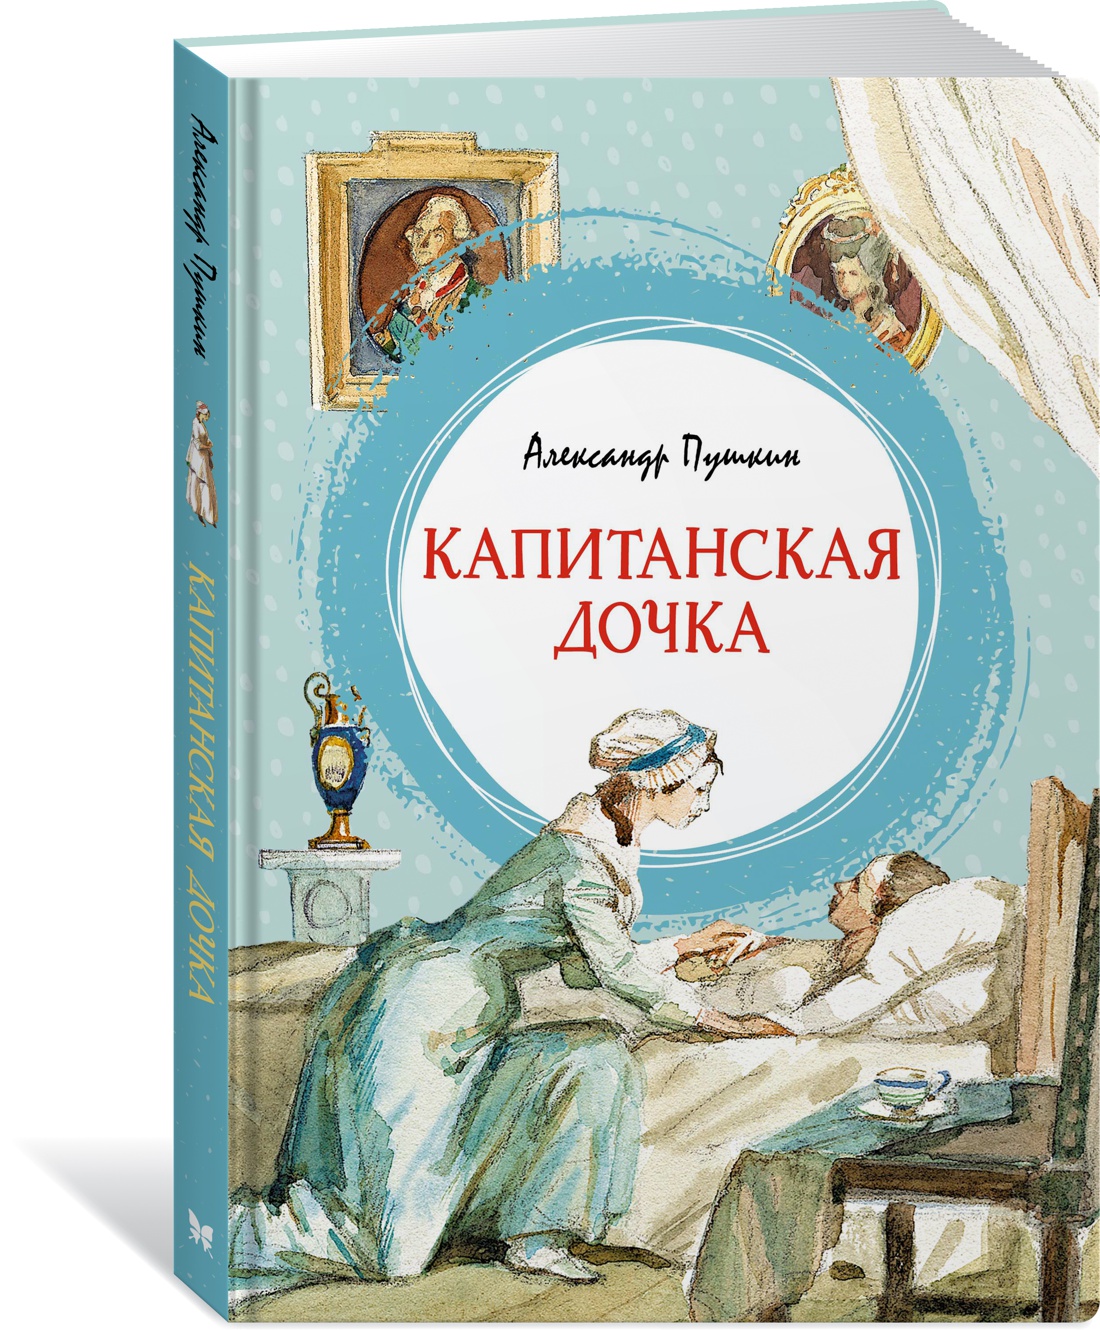 Почему повесть Пушкина названа «Капитанская дочка»? сочинение | webmaster-korolev.ru